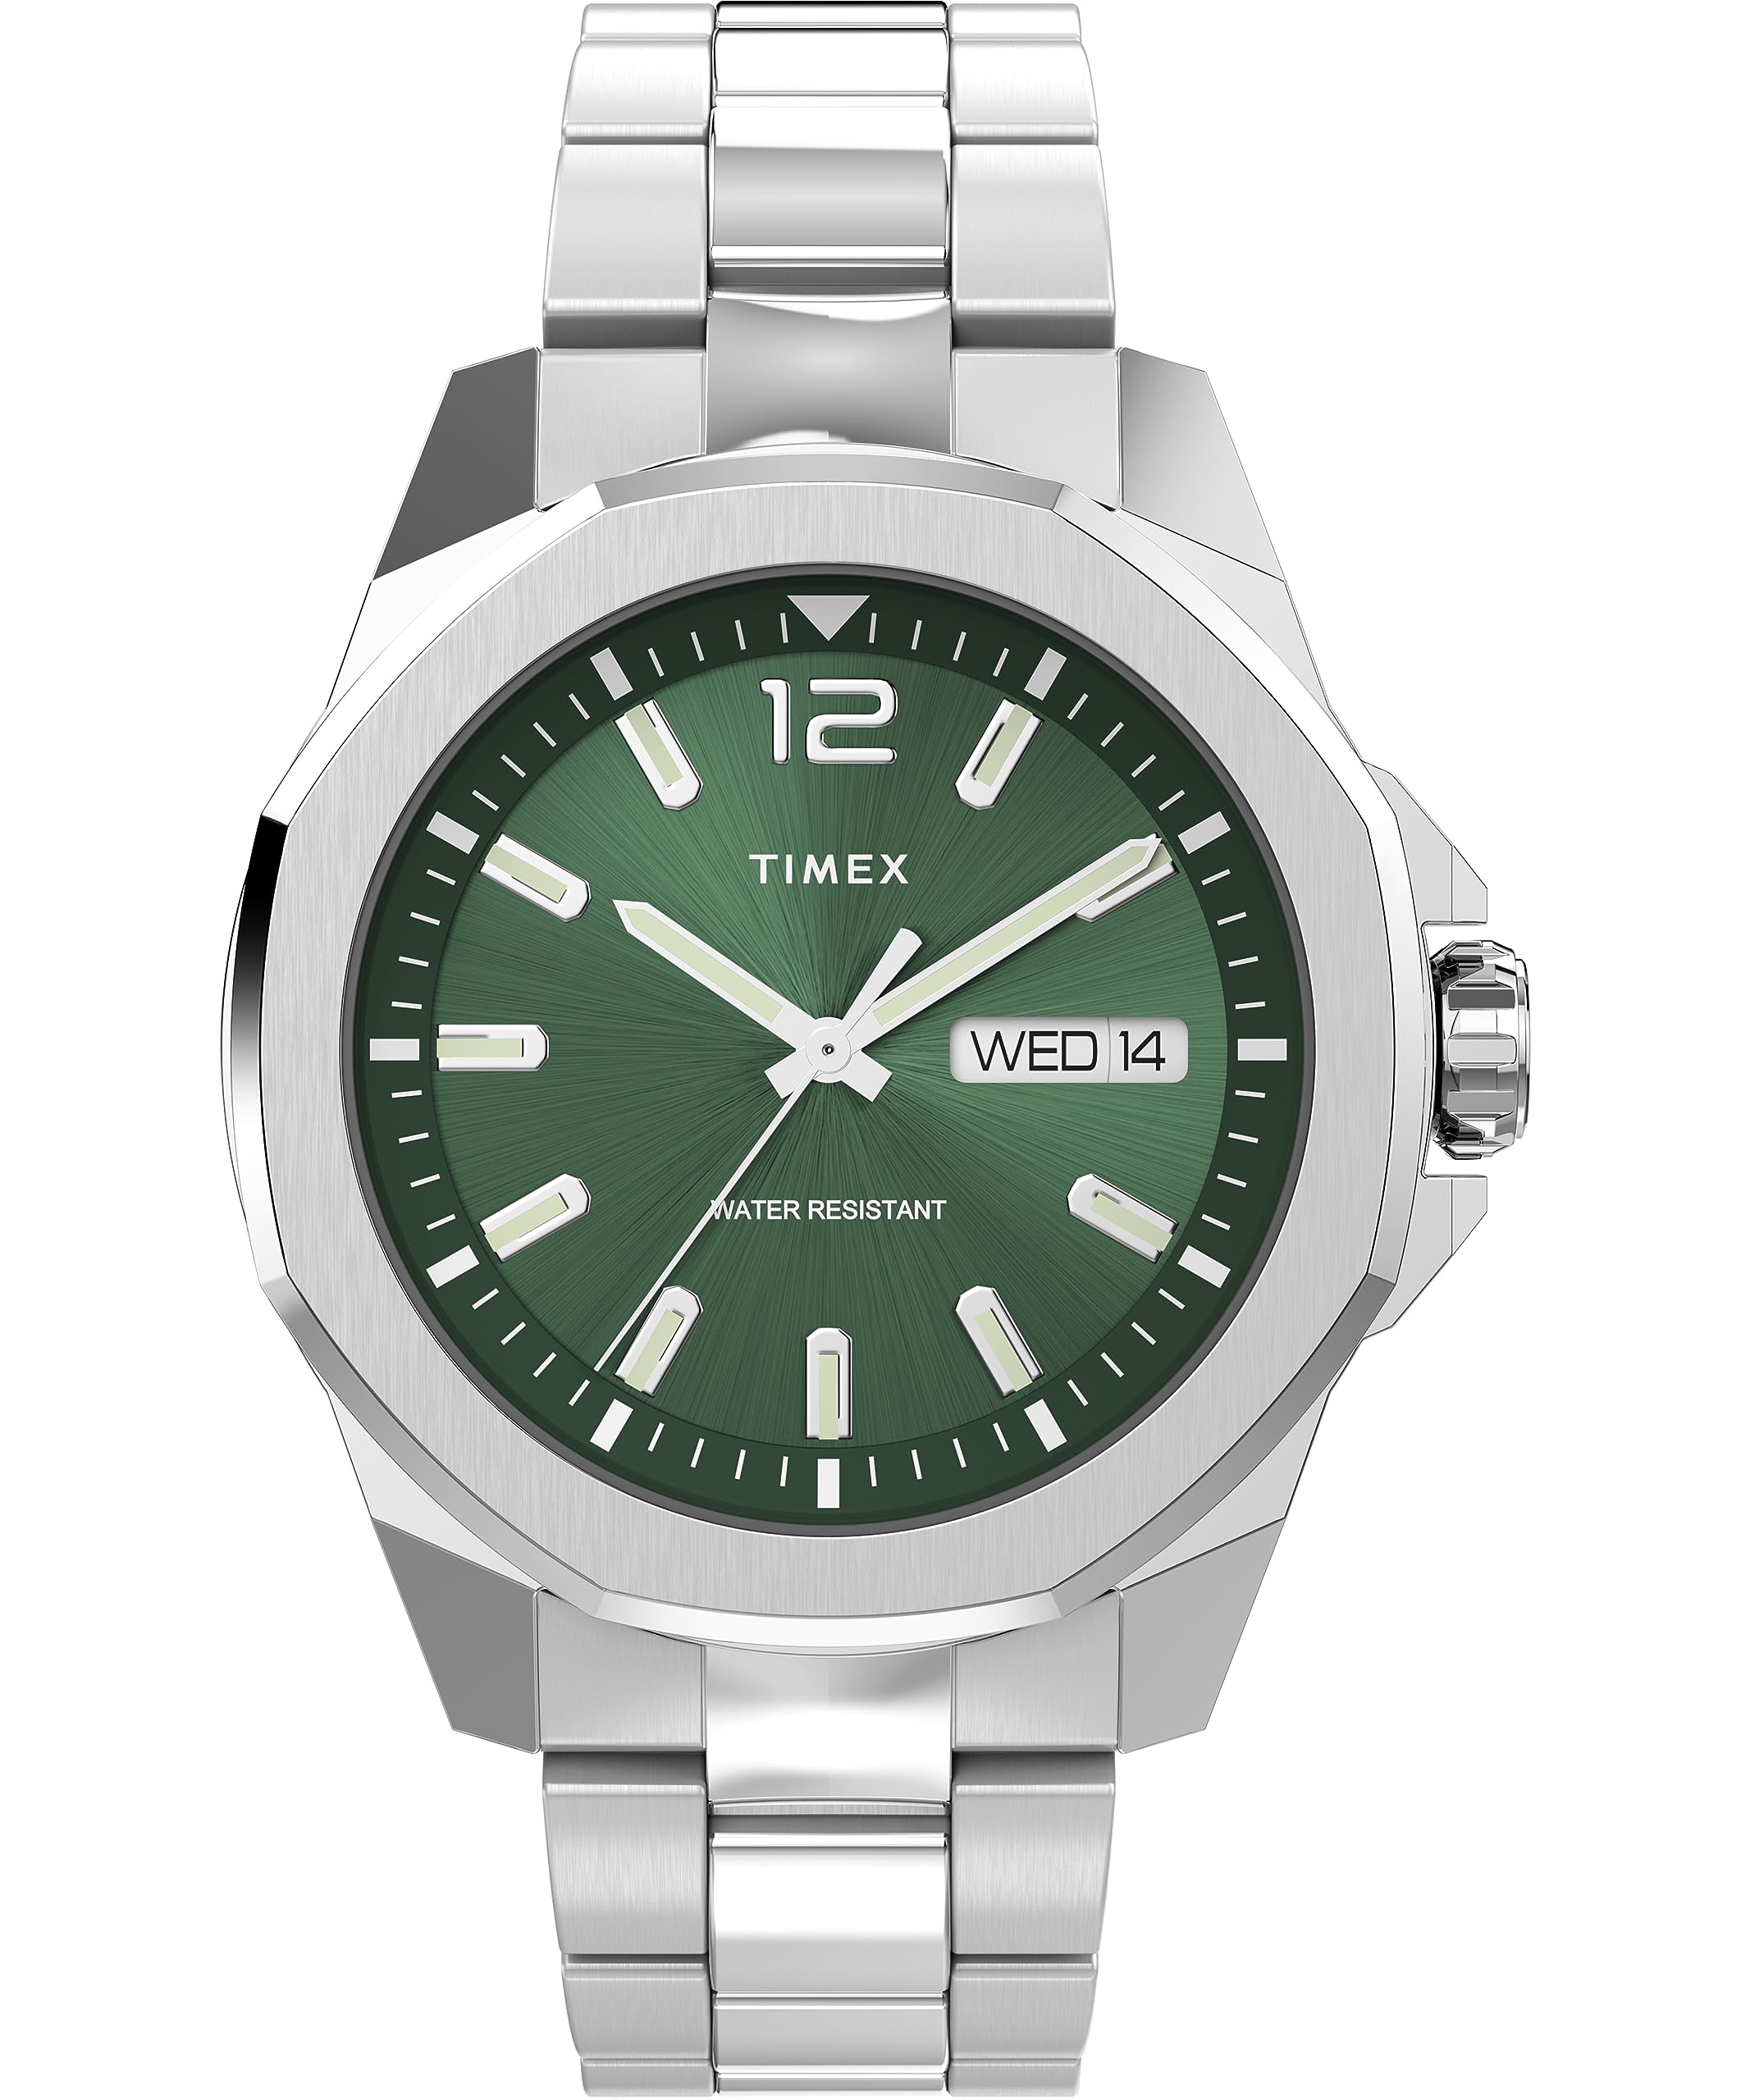 Timex Men's Essex Watch